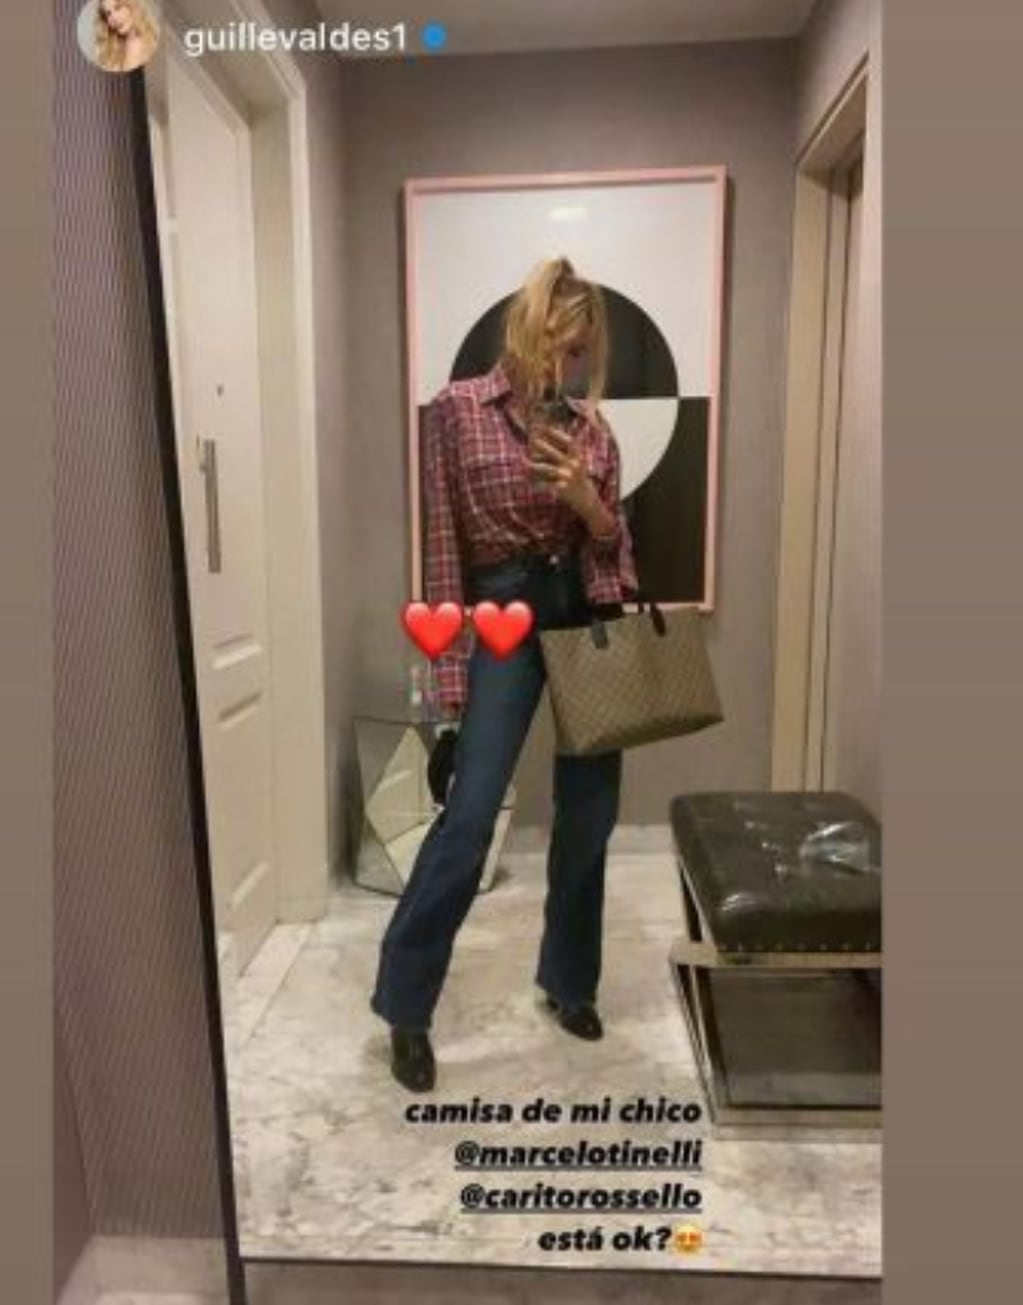 Guillermina Valdés y su historia de Instagram